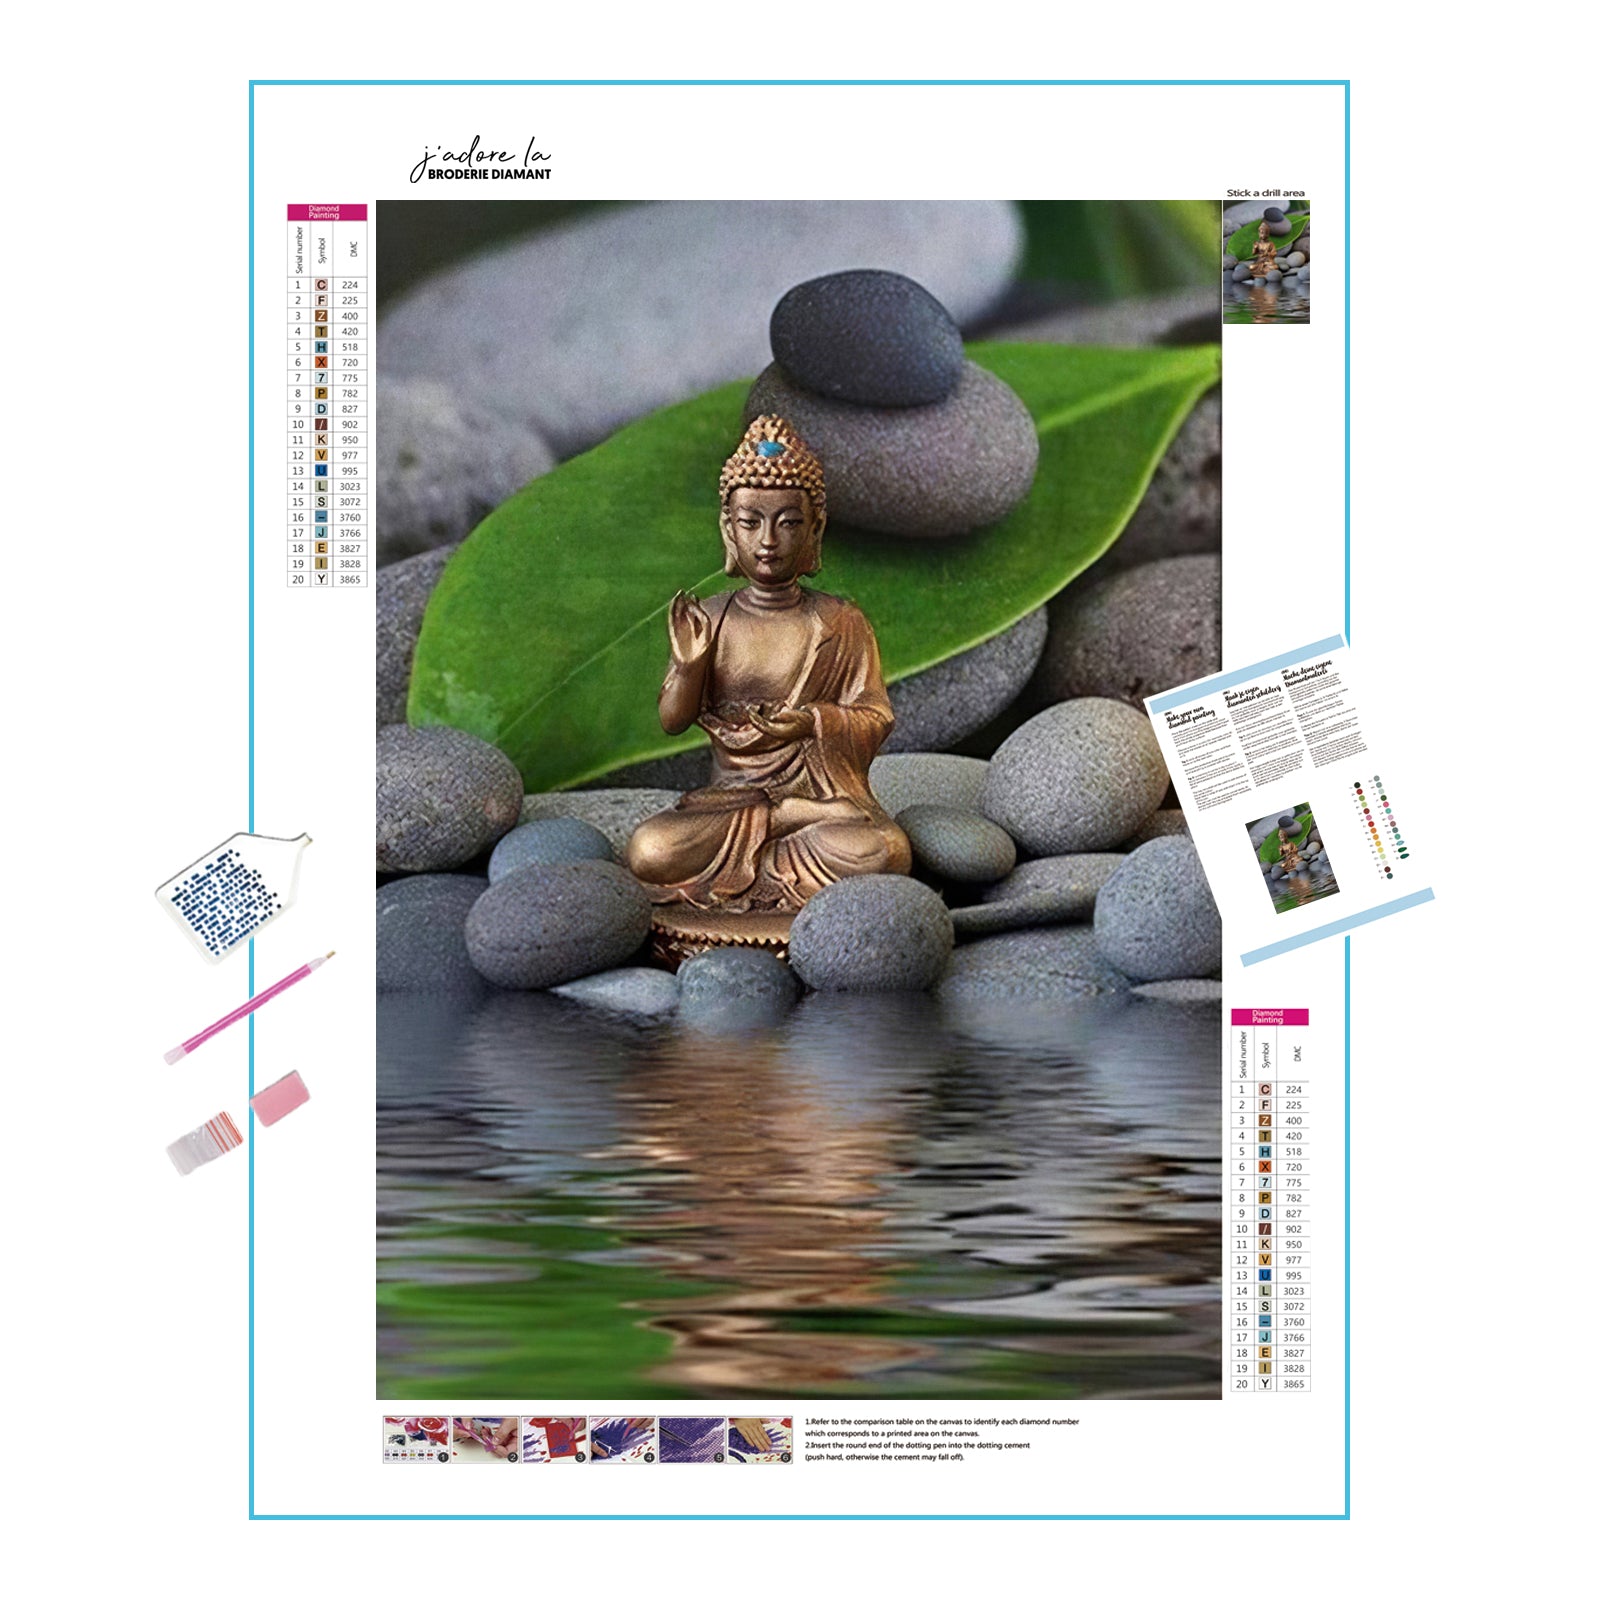 Bouddha et l'eau